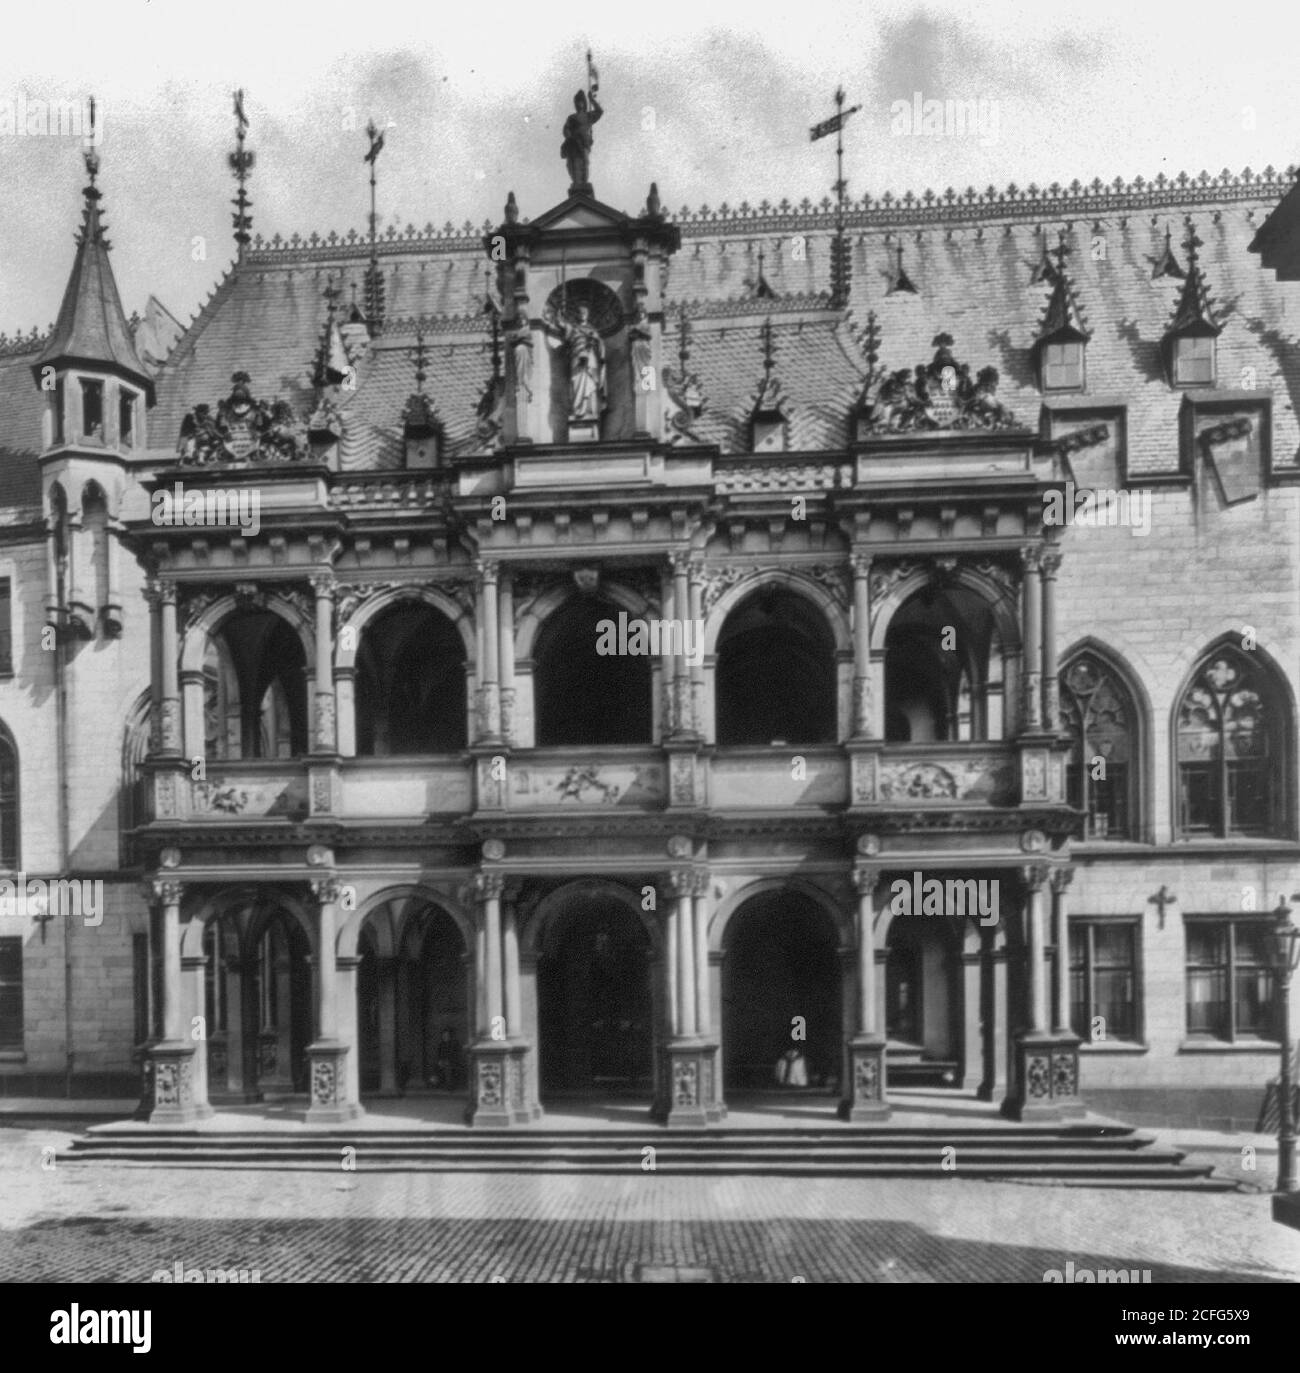 Rathaus, Colonia, Alemania, su hermoso pórtico renacentista de 1569-1571 diseñado por Wilhelm Vernickel, no mucho después de la restauración de 1881 Foto de stock